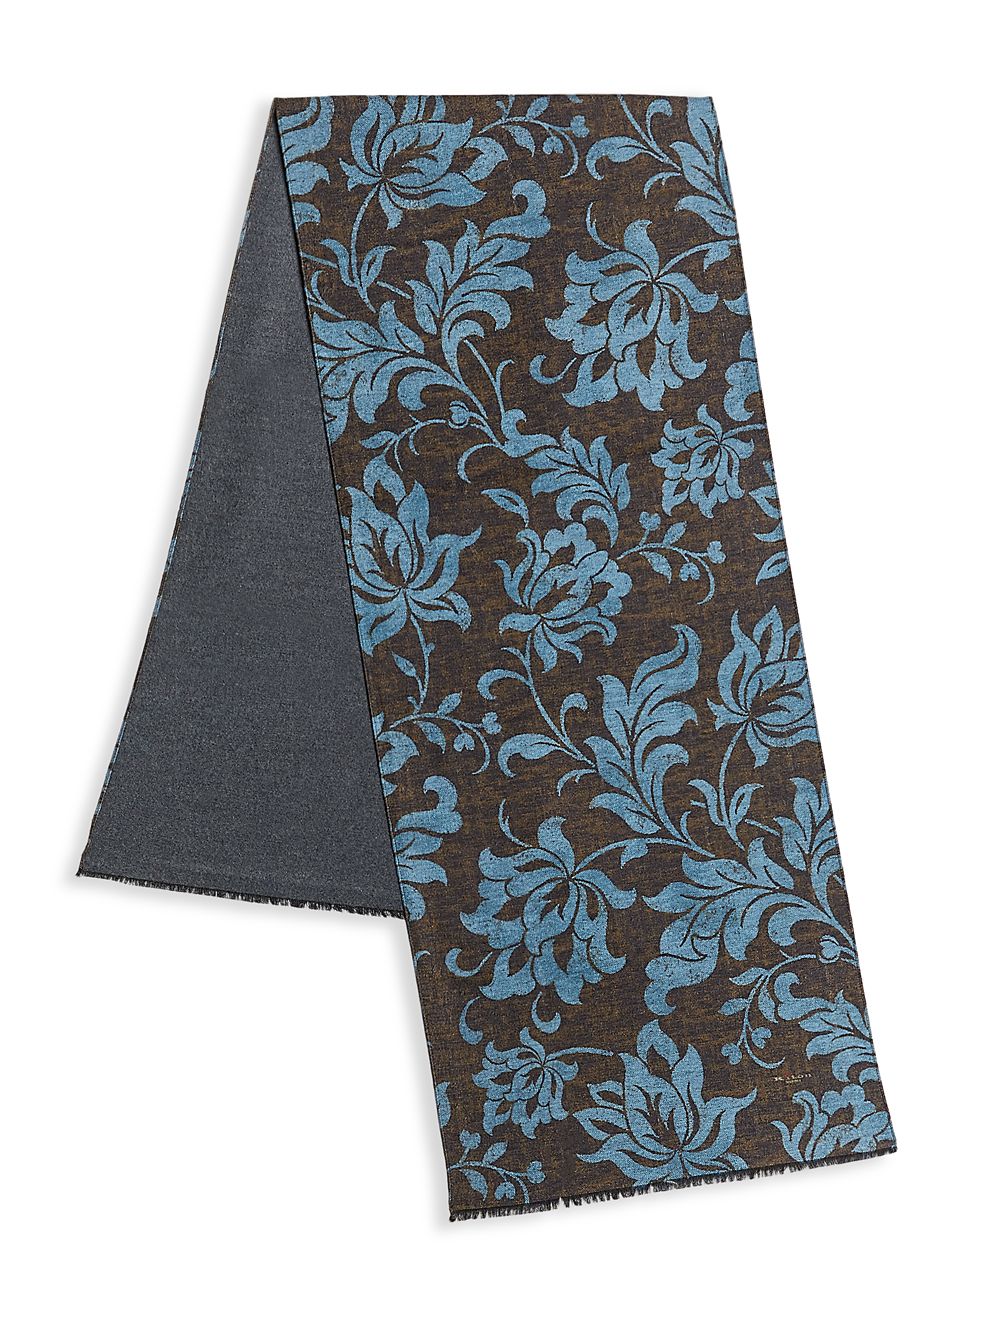 Шелковый шарф с принтом листьев Kiton, коричневый